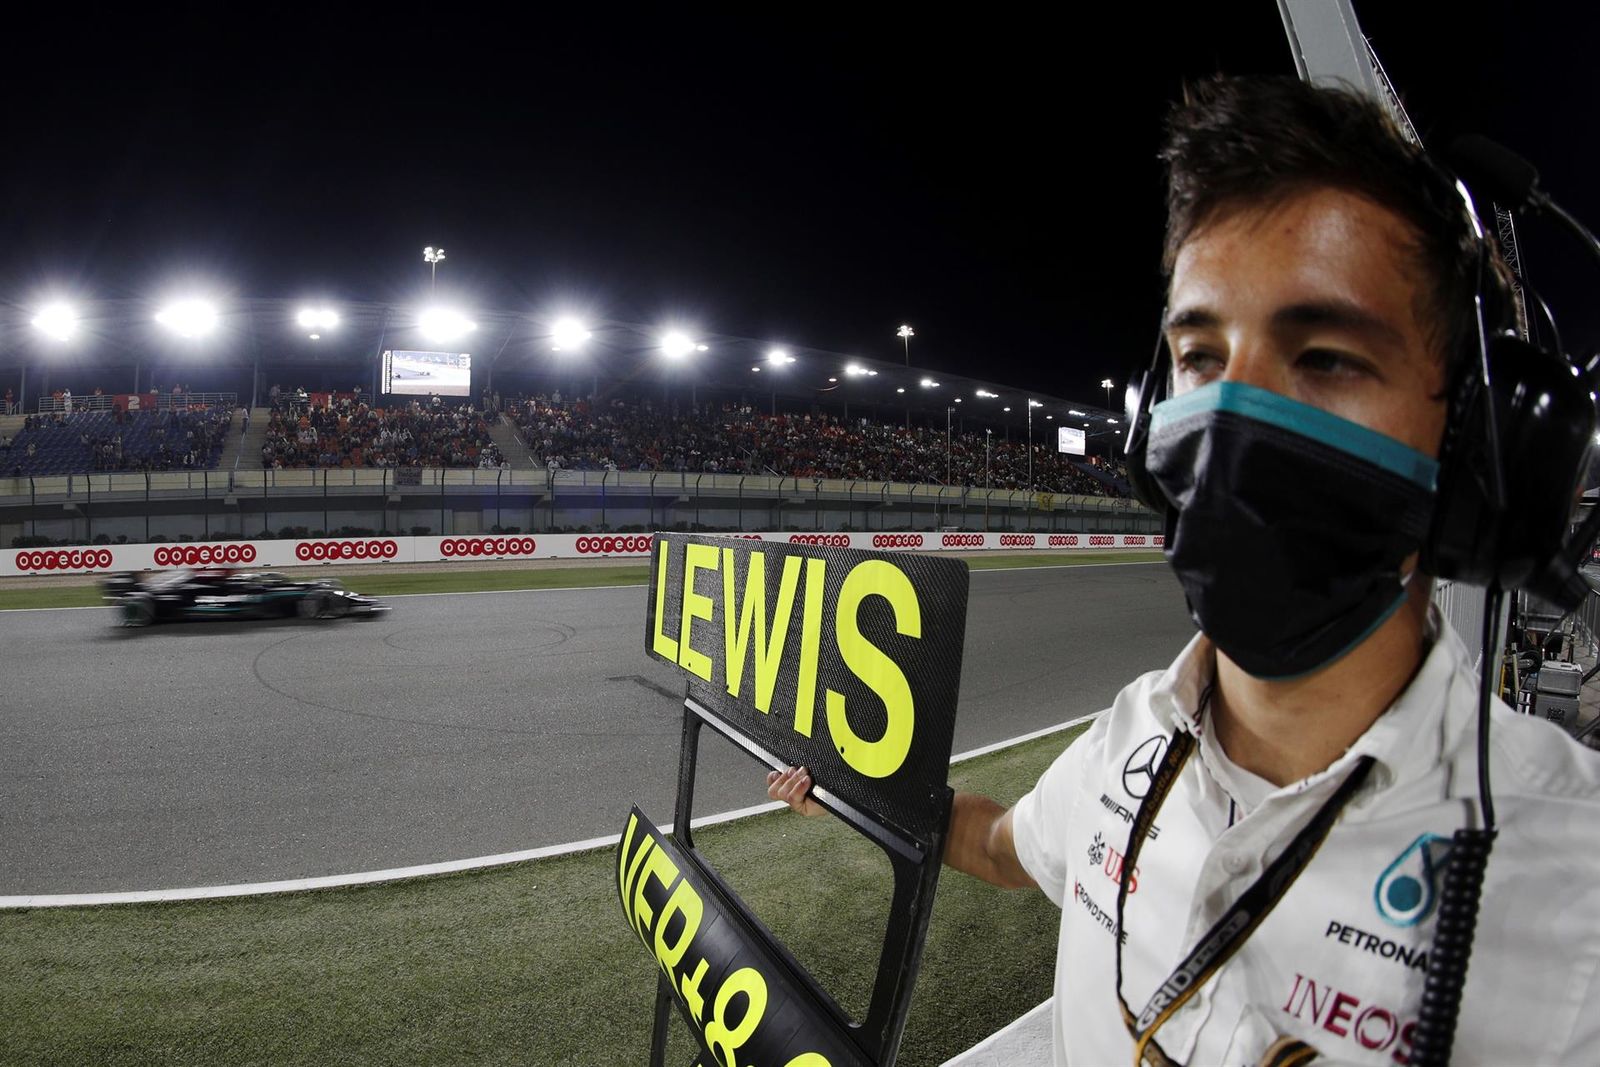 Hamilton gana en Qatar por delante de Verstappen; 'Checo' Pérez queda en cuarto lugar